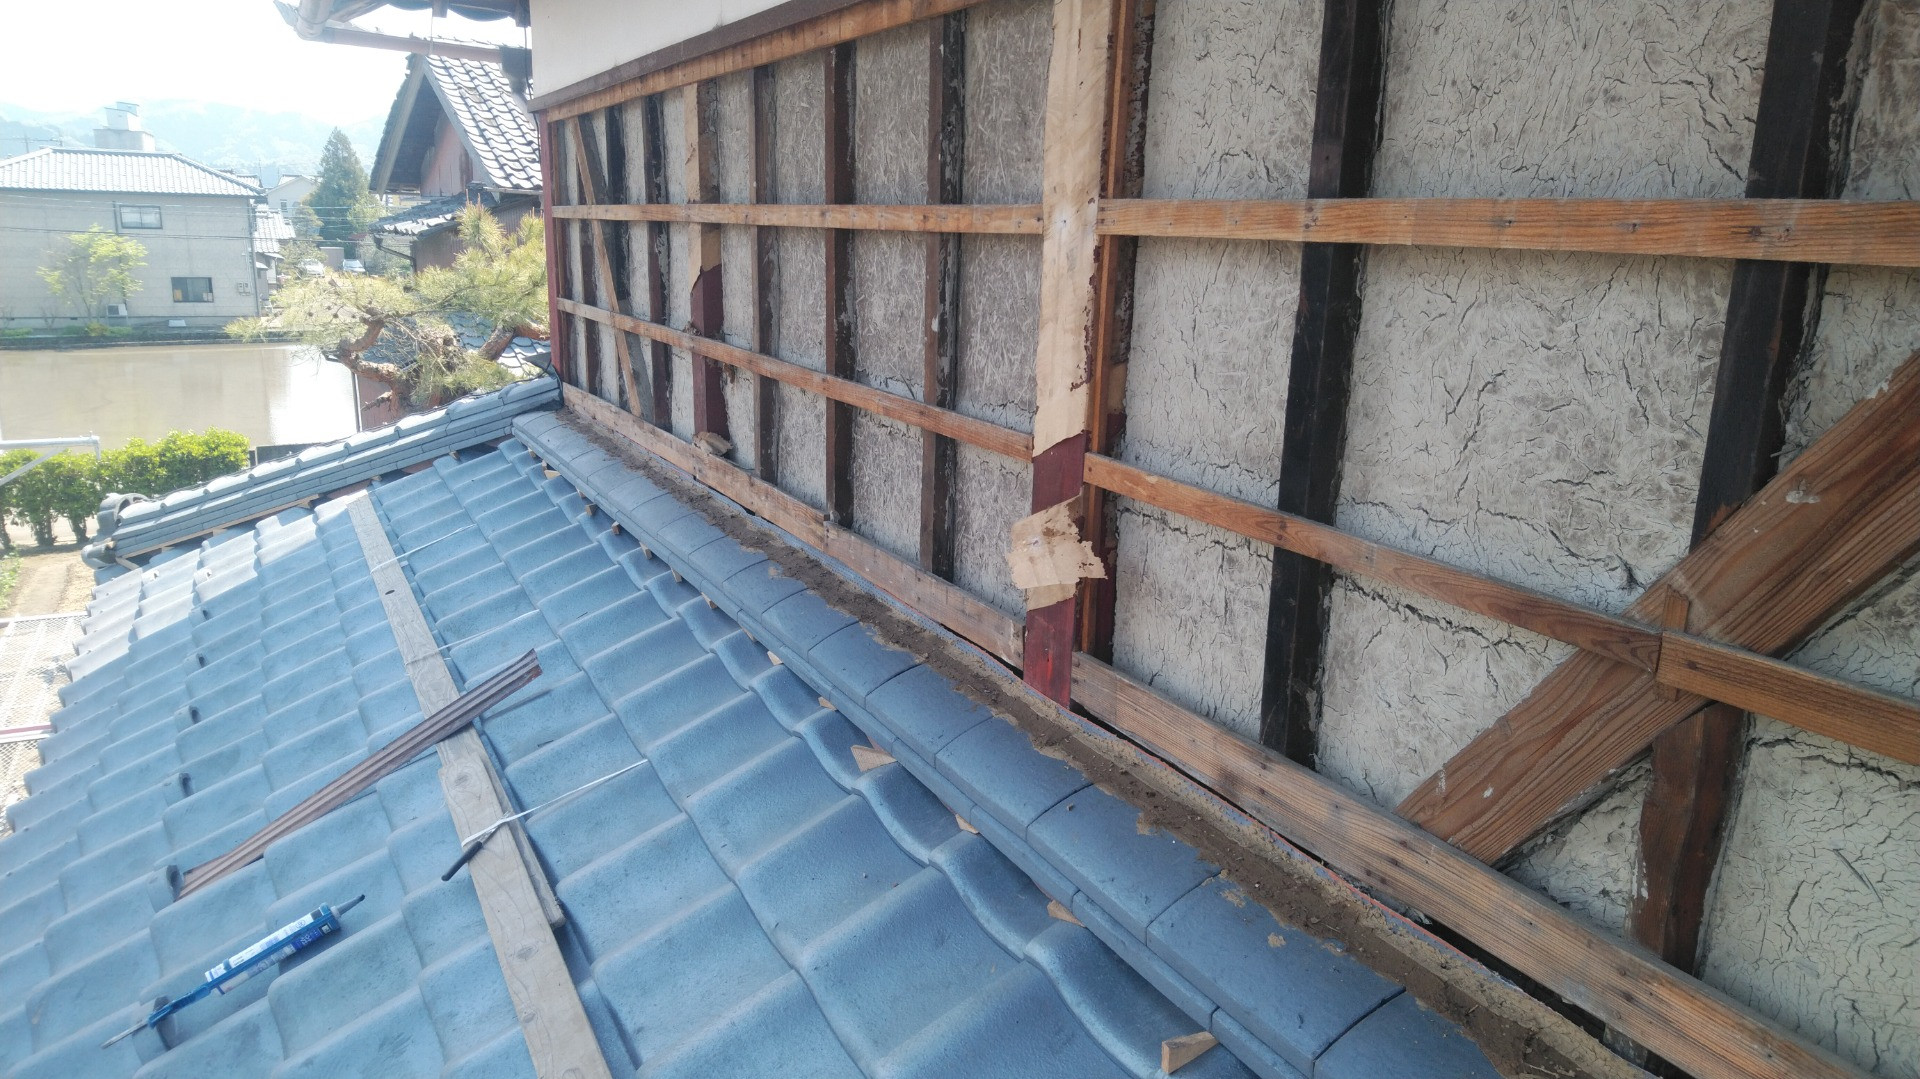 鯖江市で下屋瓦の葺き替え工事に来ています。